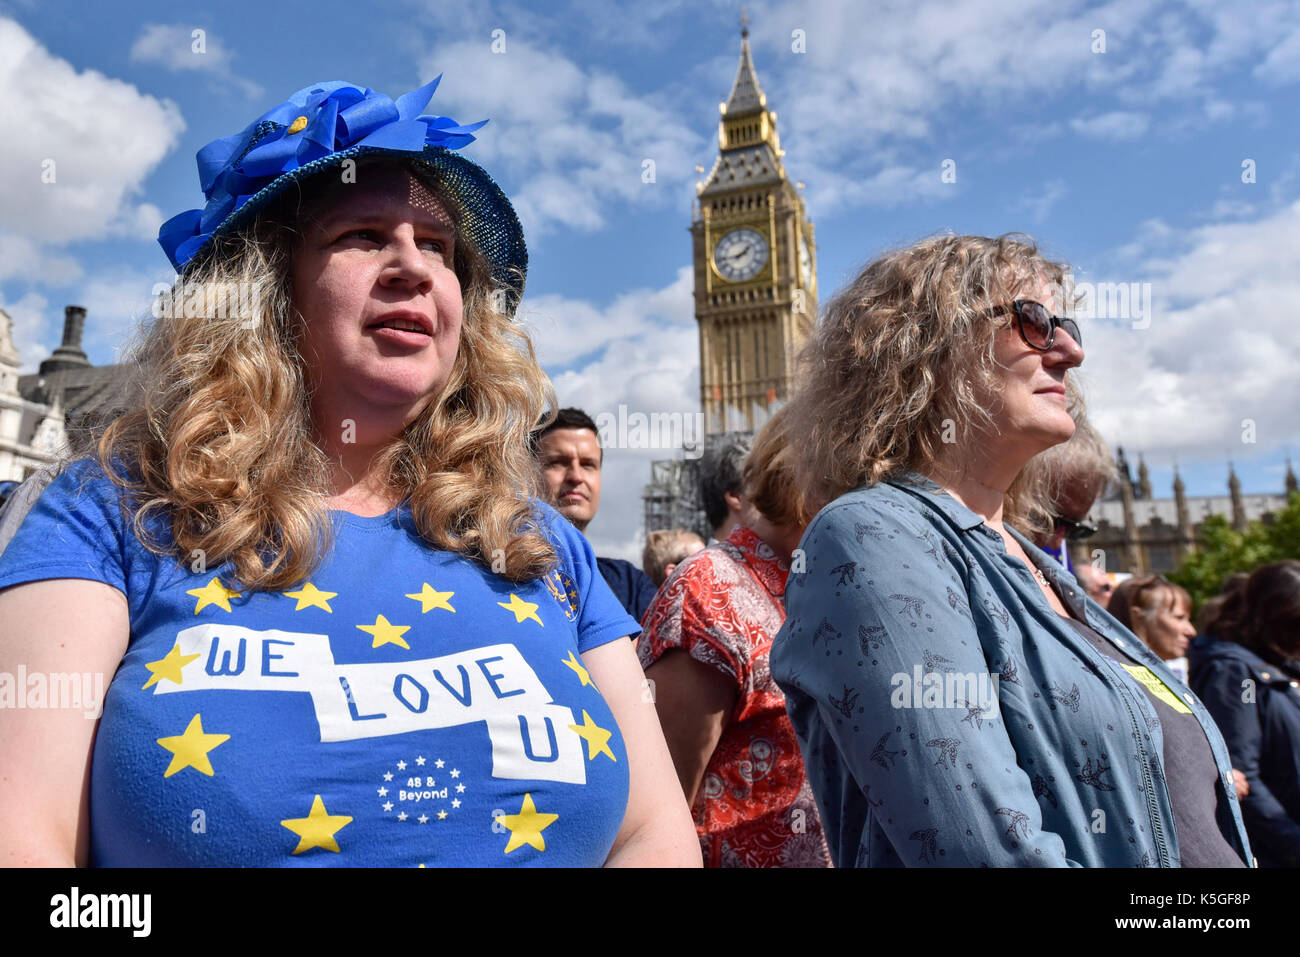 Londres, Royaume-Uni. 9 septembre 2017. Anti-Brexit manifestants prendre part à une marche pour l'Europe rassemblement à la place du Parlement faisant campagne pour le renouvellement de l'adhésion de l'Union européenne. Crédit : Stephen Chung / Alamy Live News Banque D'Images